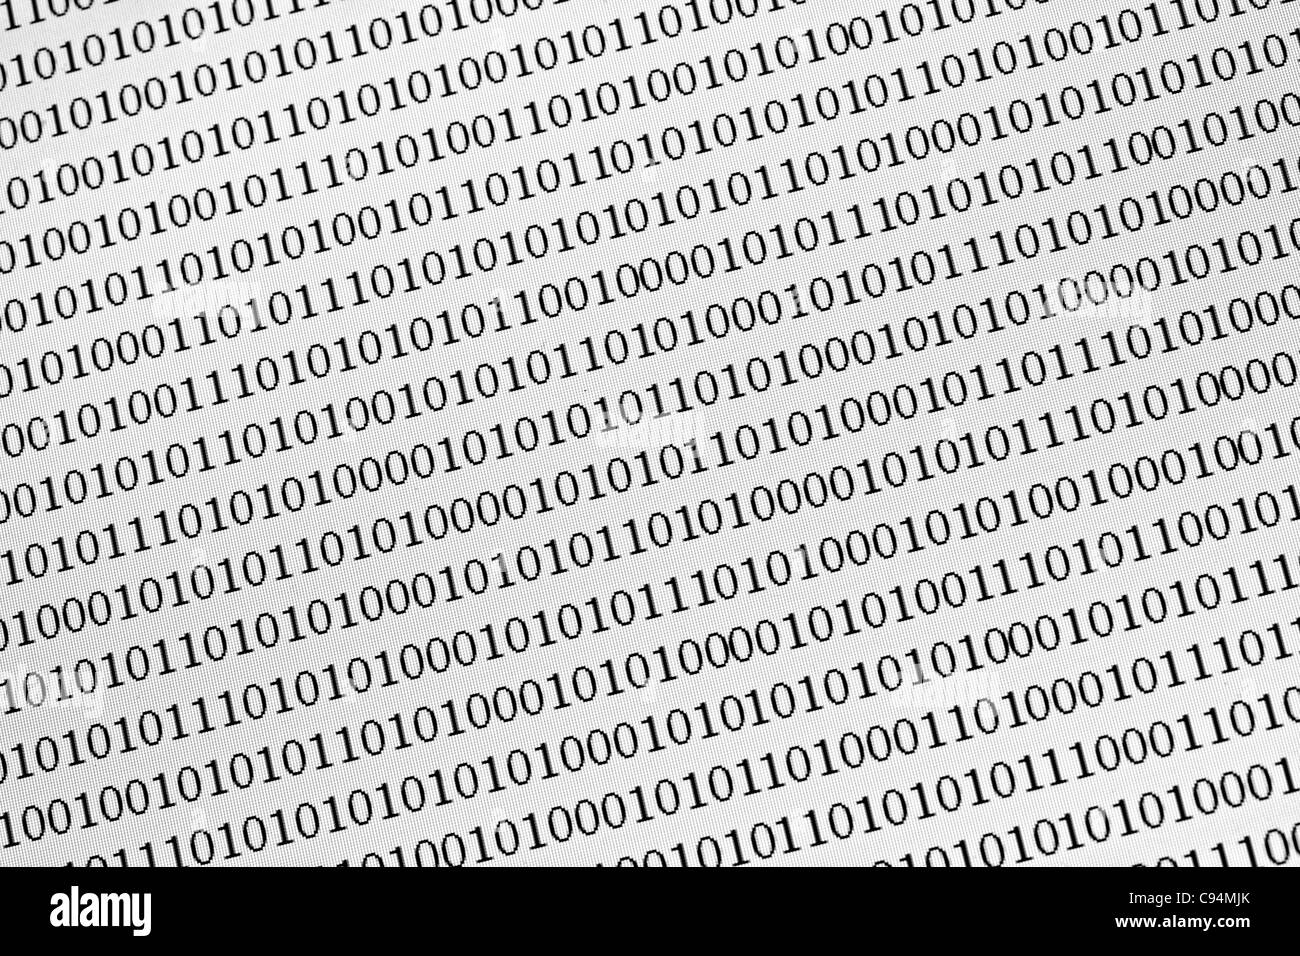 Les nombres binaires sur un écran d'ordinateur Banque D'Images